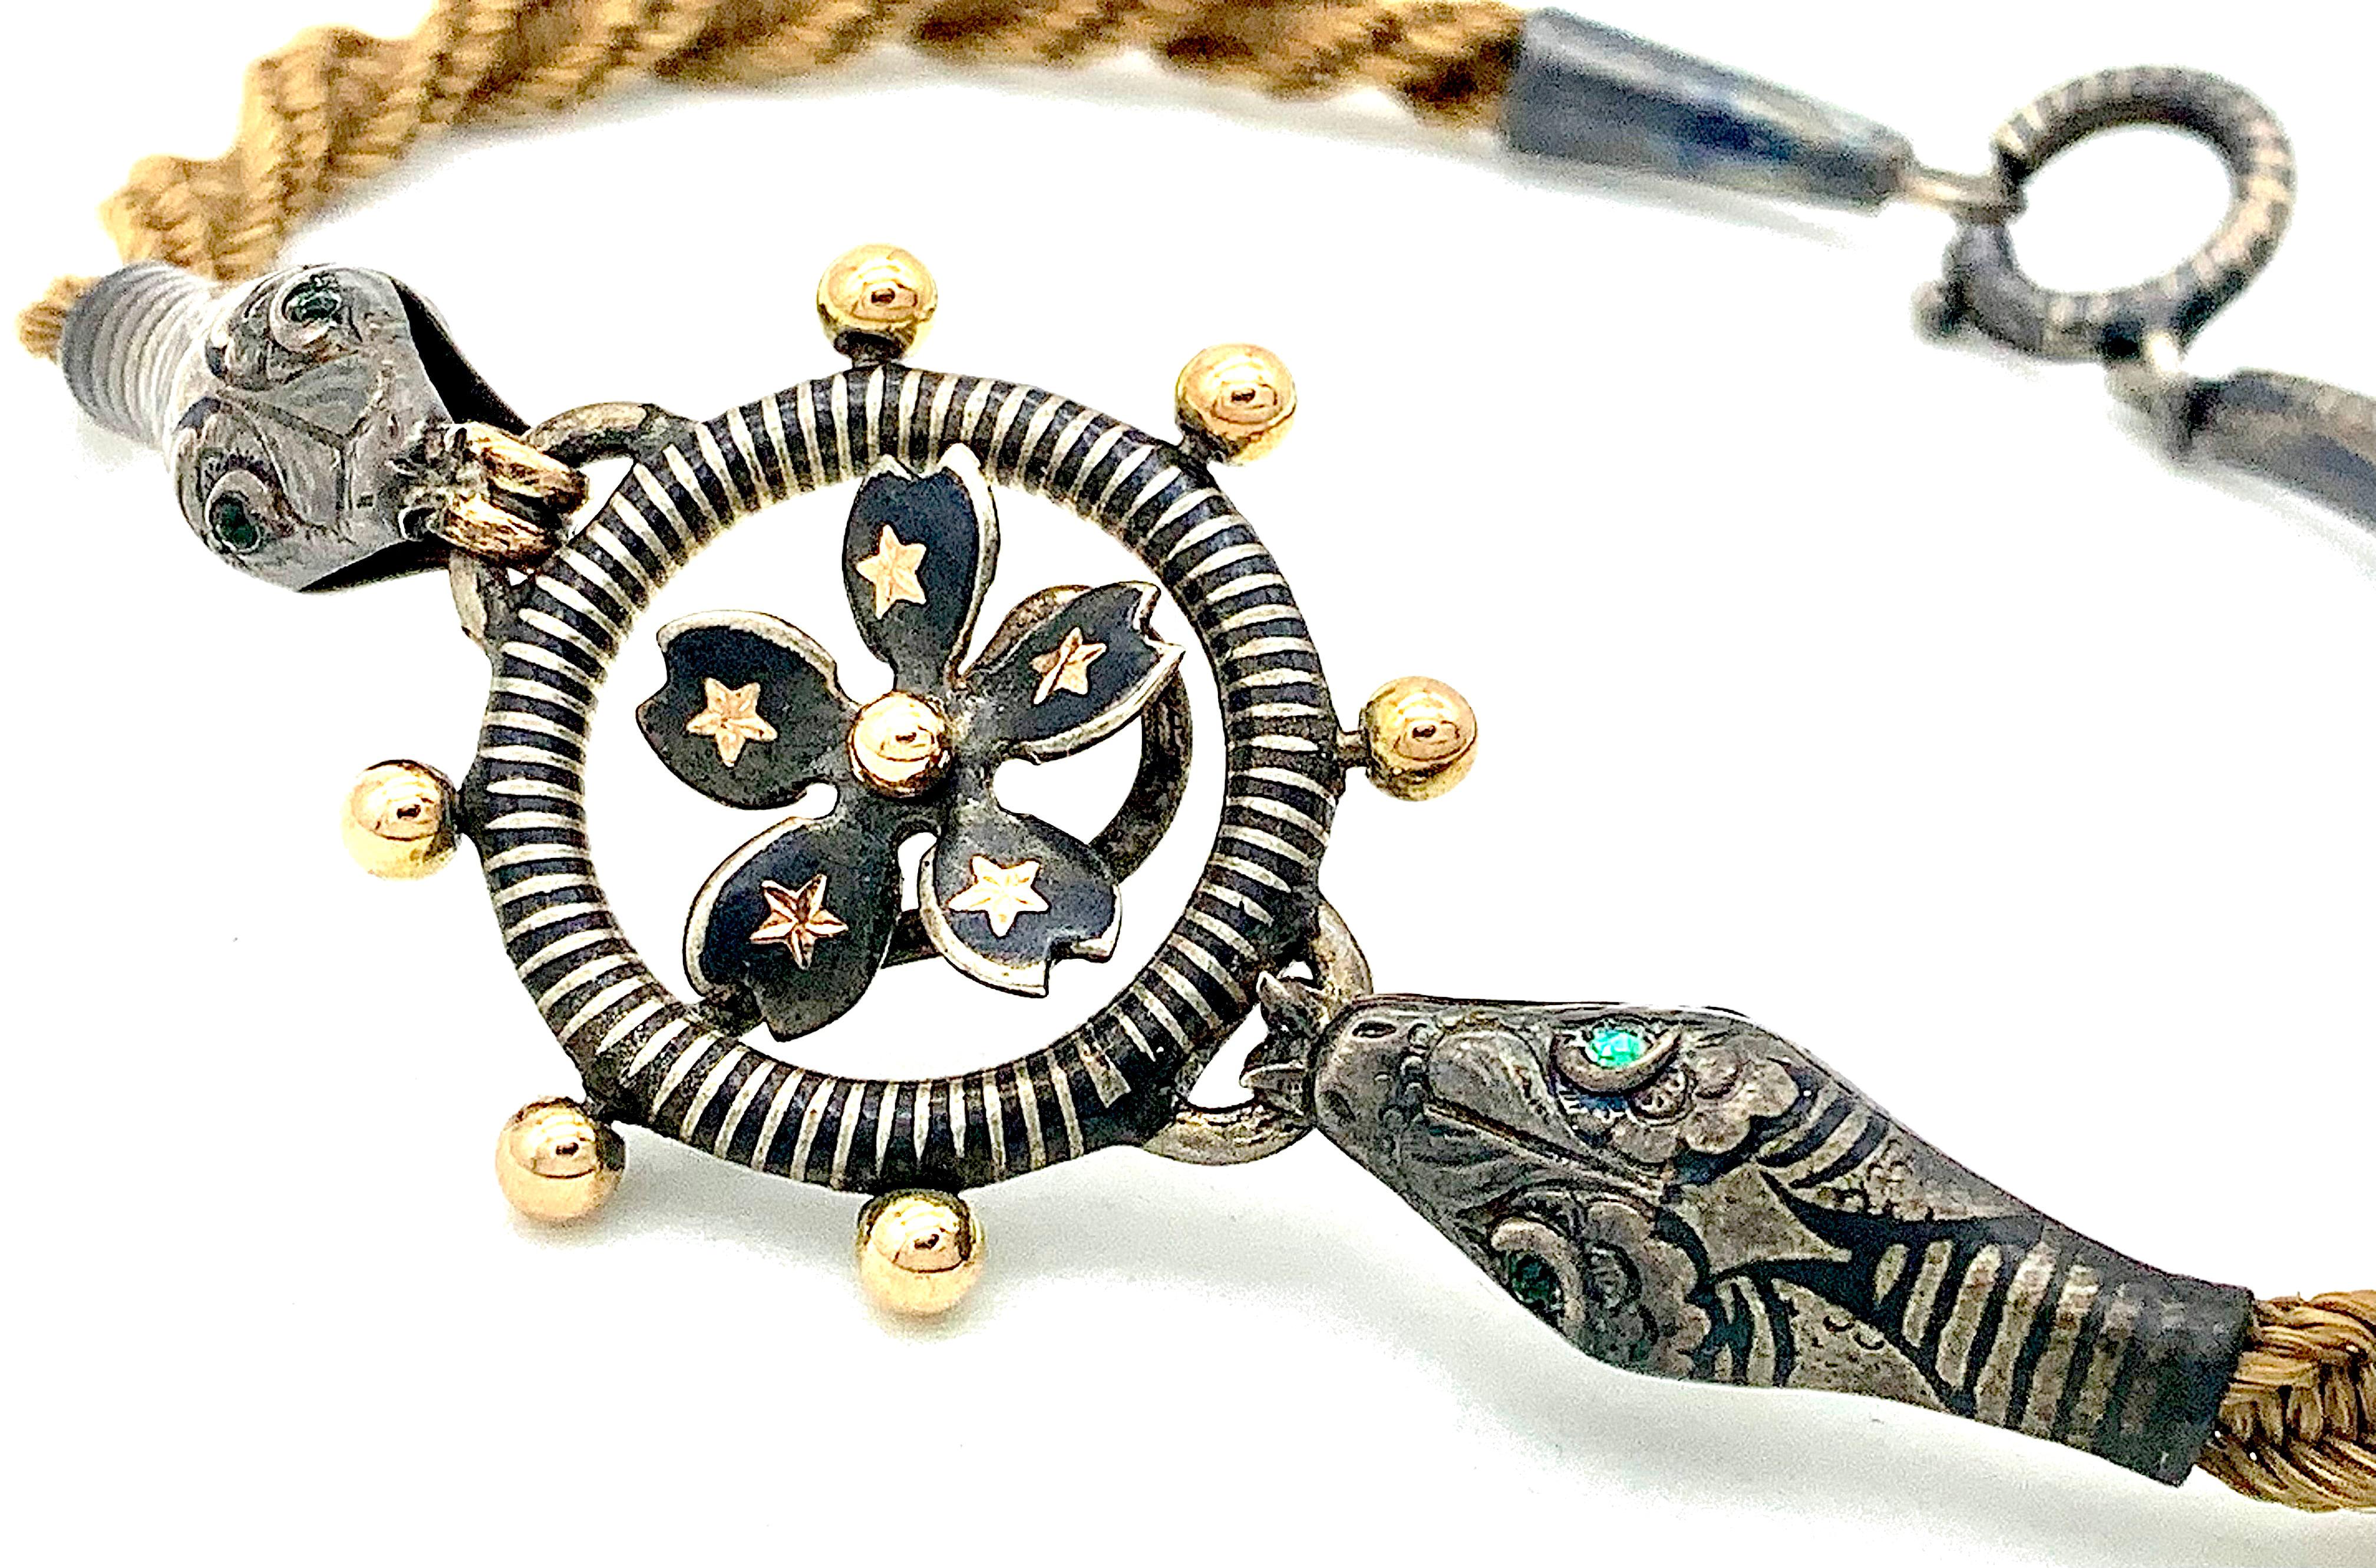 Ce bracelet rare et inhabituel est conçu comme deux têtes de serpent qui tiennent une roue.  Les boutons de la roue ont été recouverts d'une dorure à l'or rose. Le centre de la roue est décoré d'une fleur composée de cinq pétales en forme de cœur,